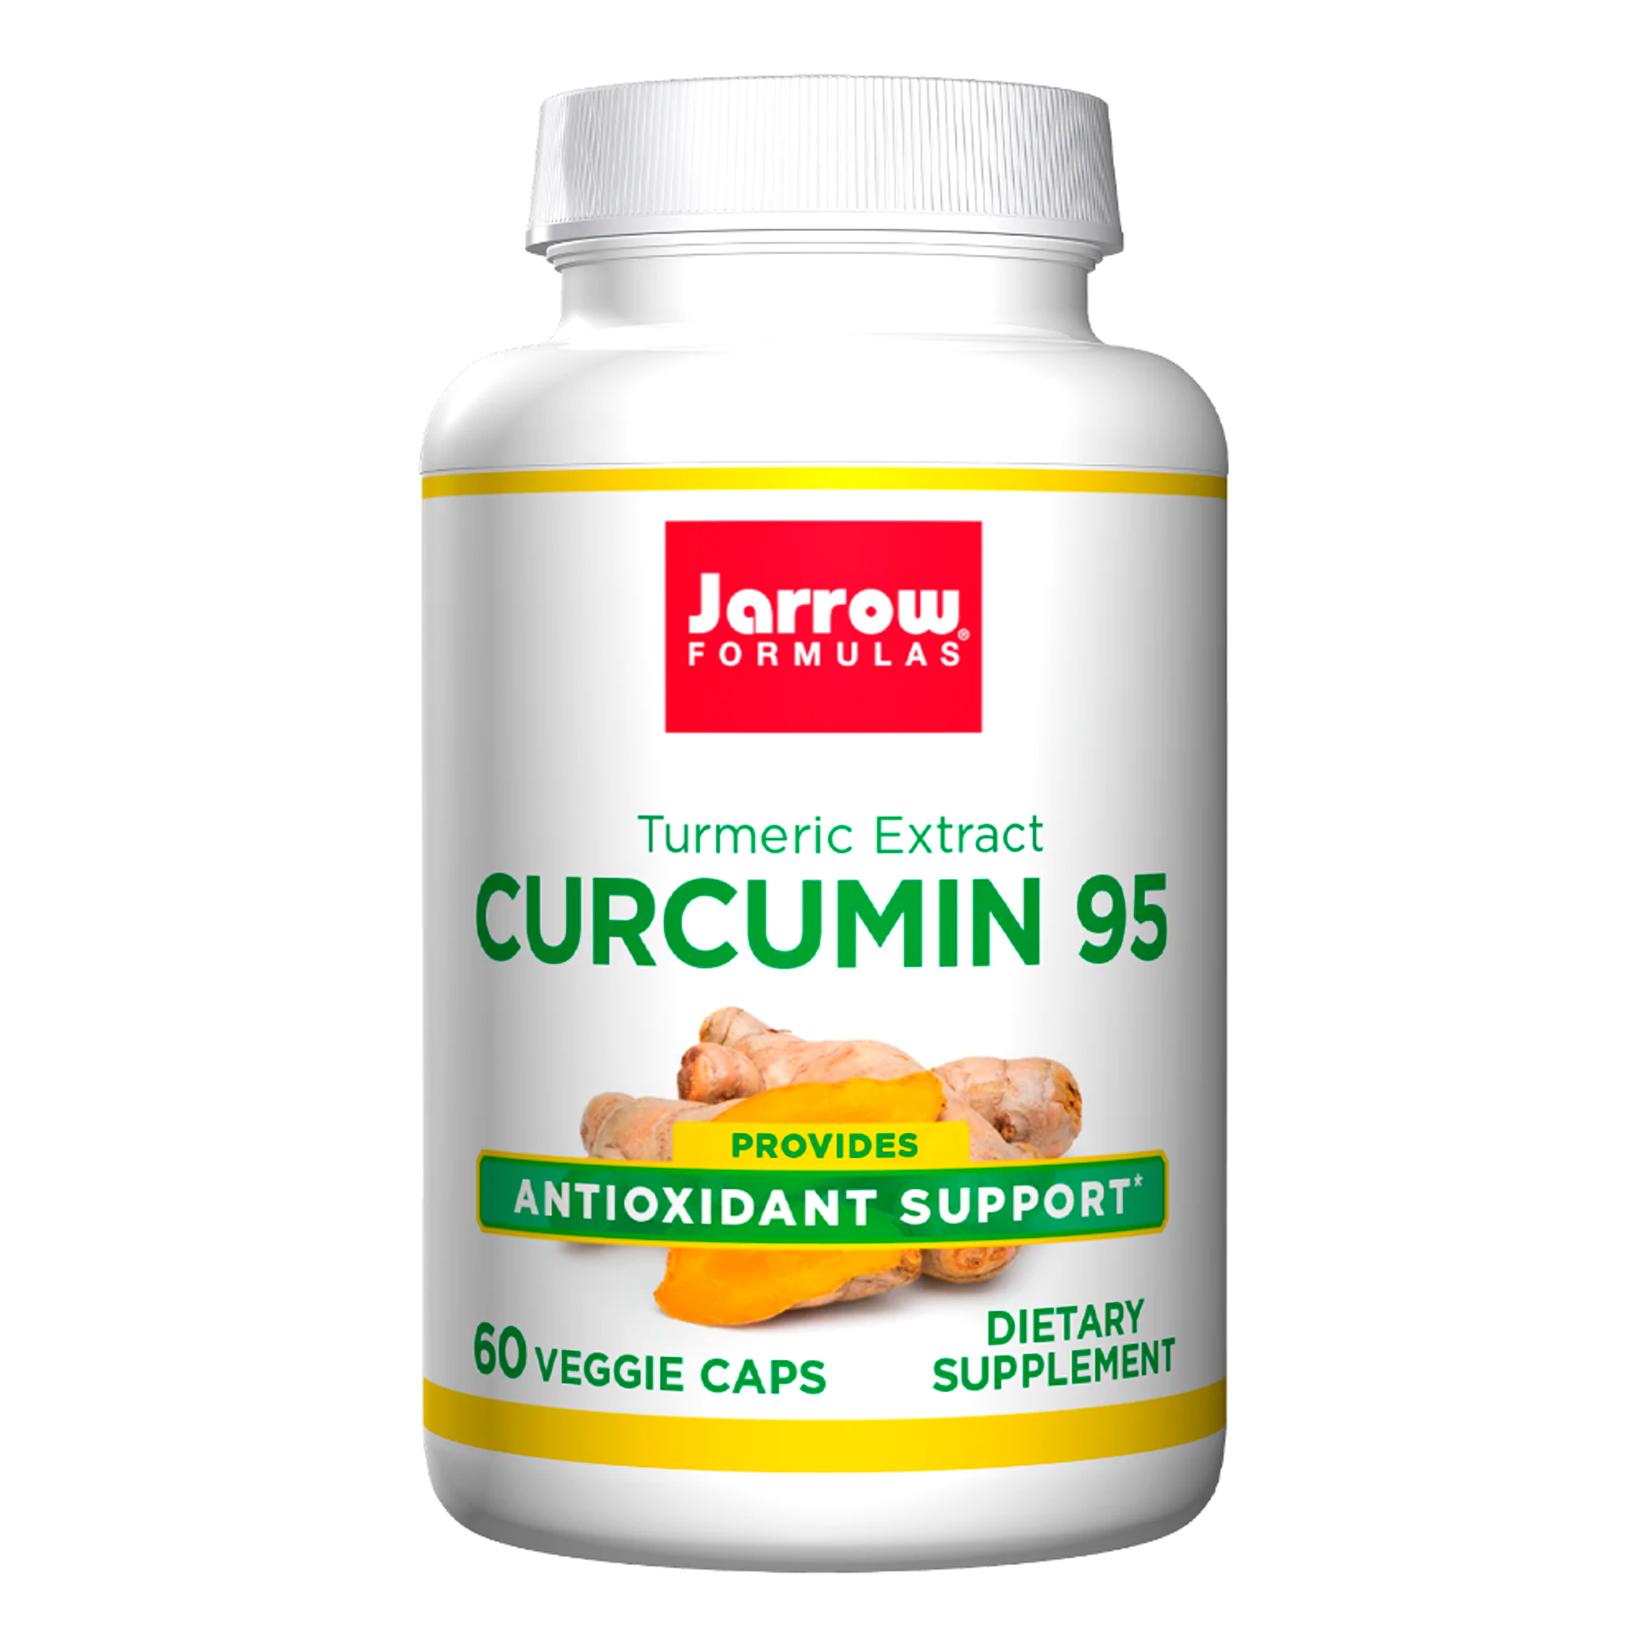 Jarrow Formulas - Curcumin 95